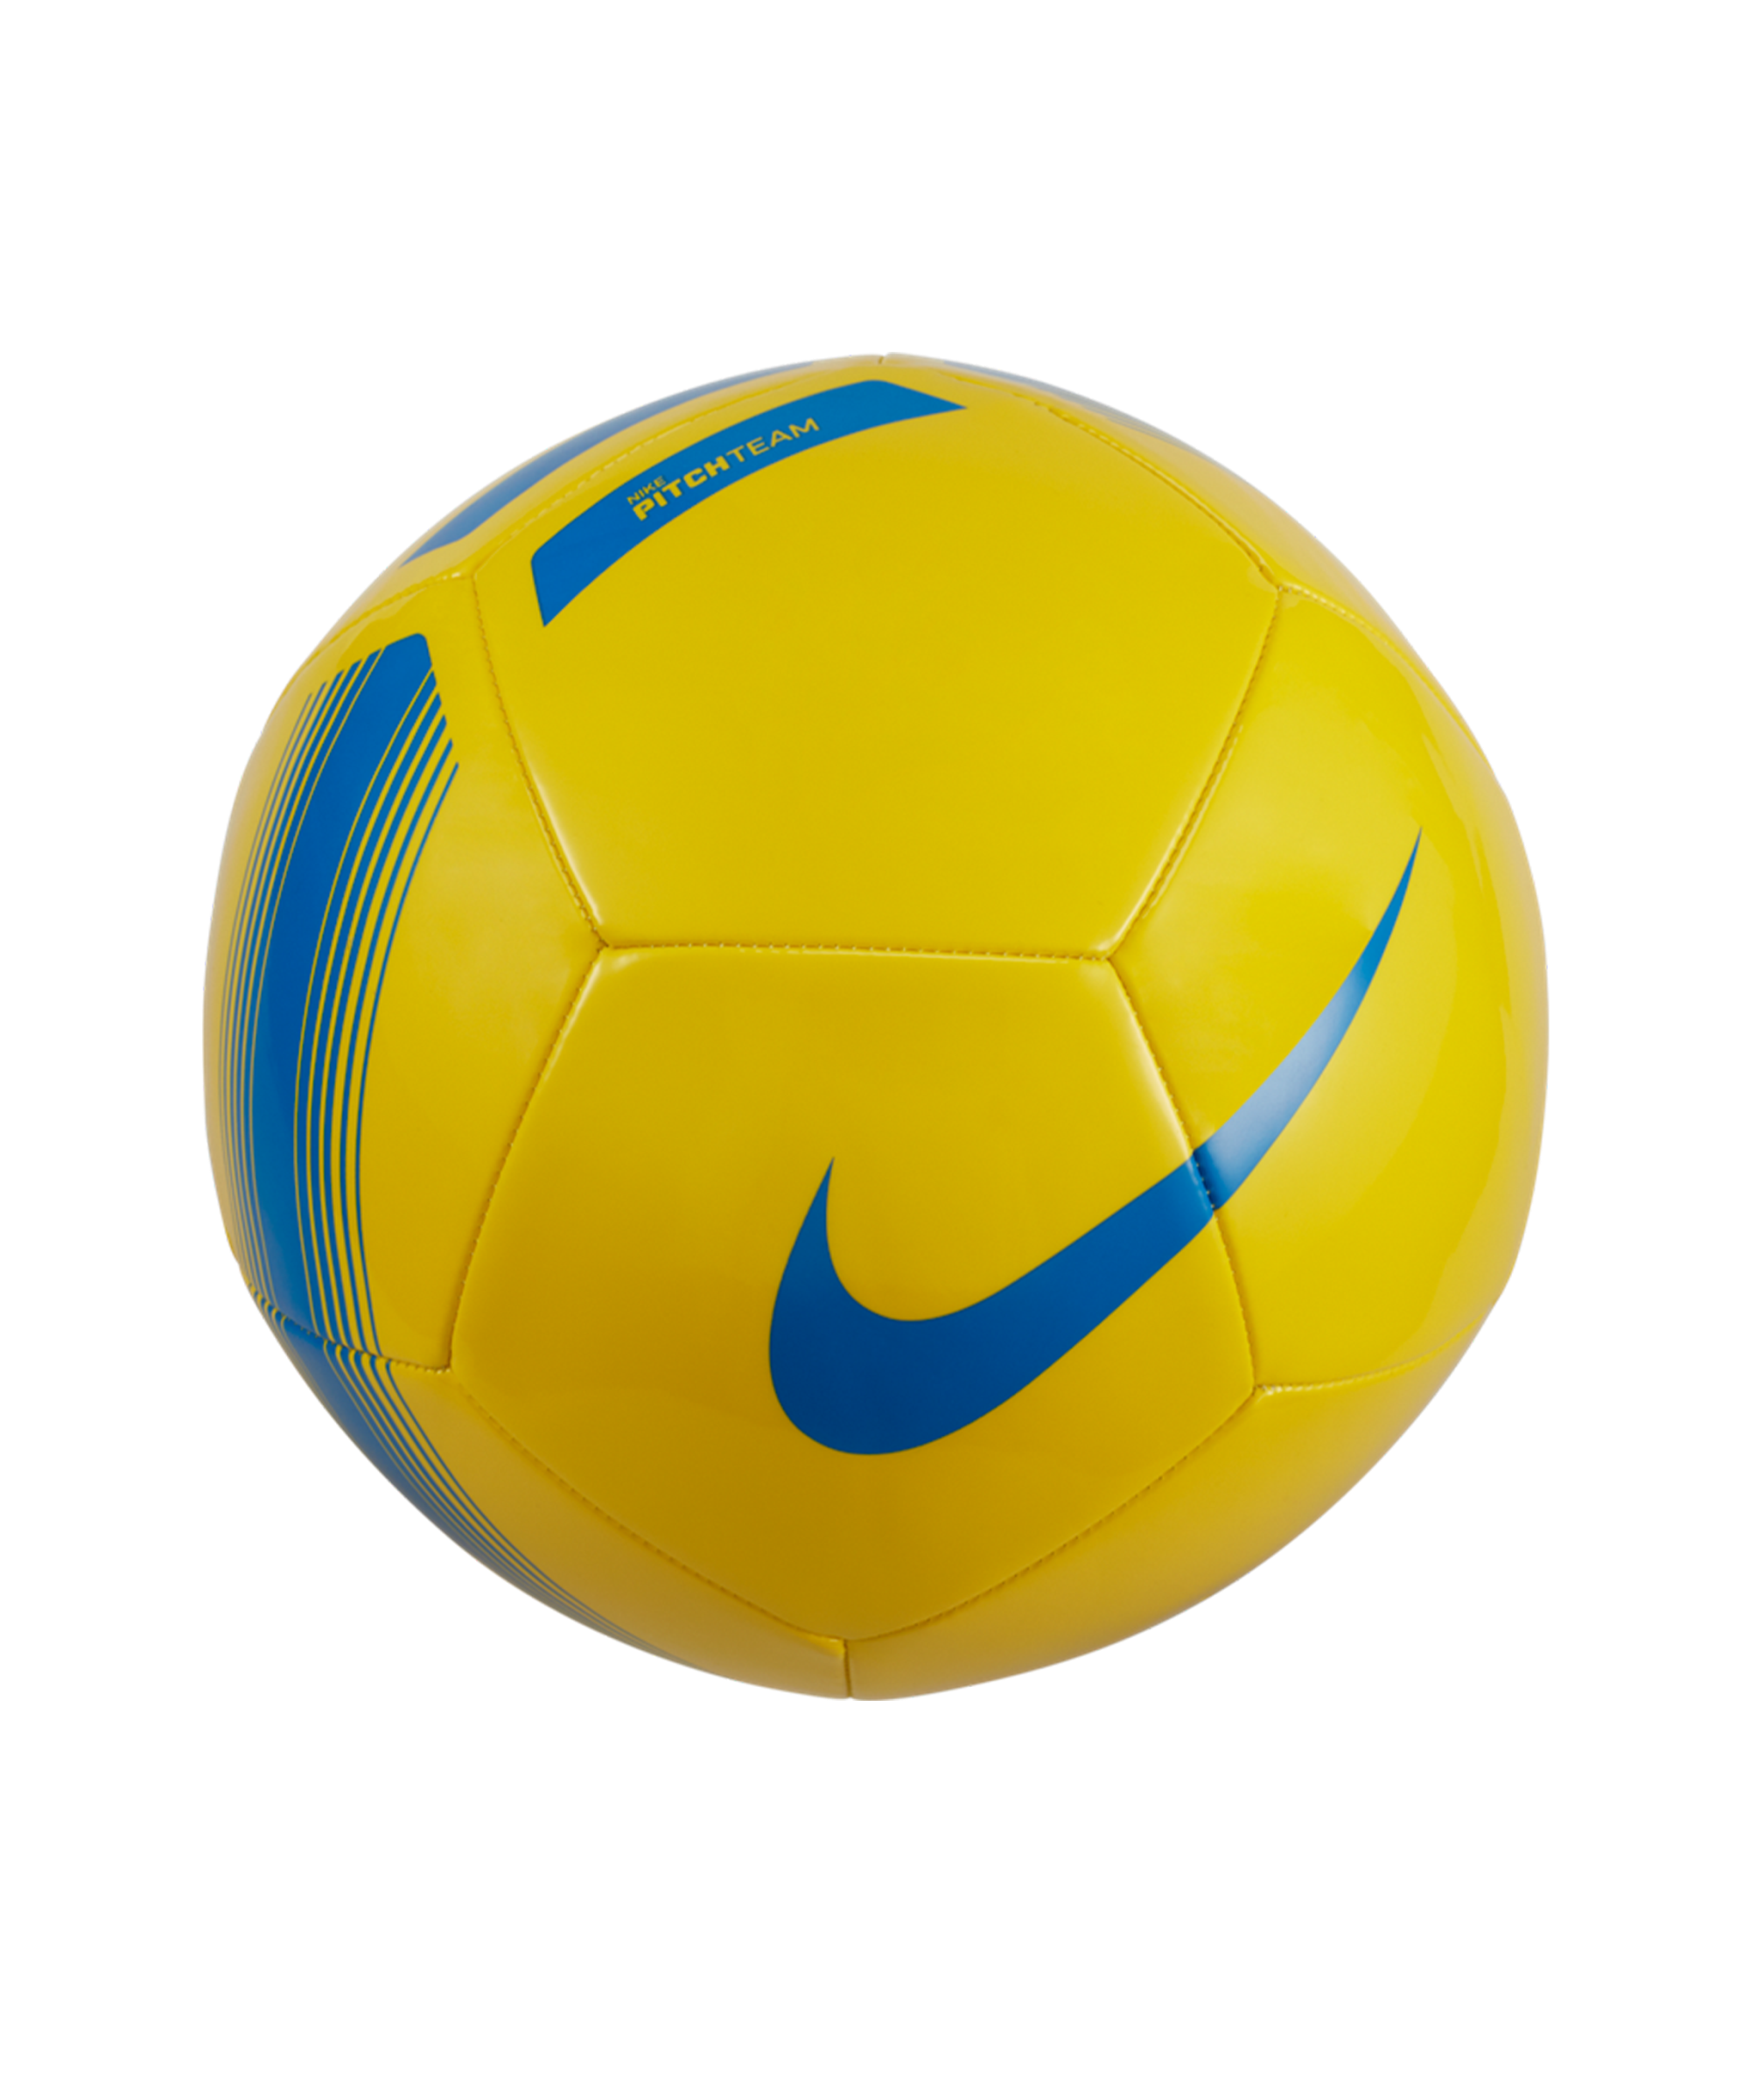 Nike - Ballon de foot PITCH TEAM